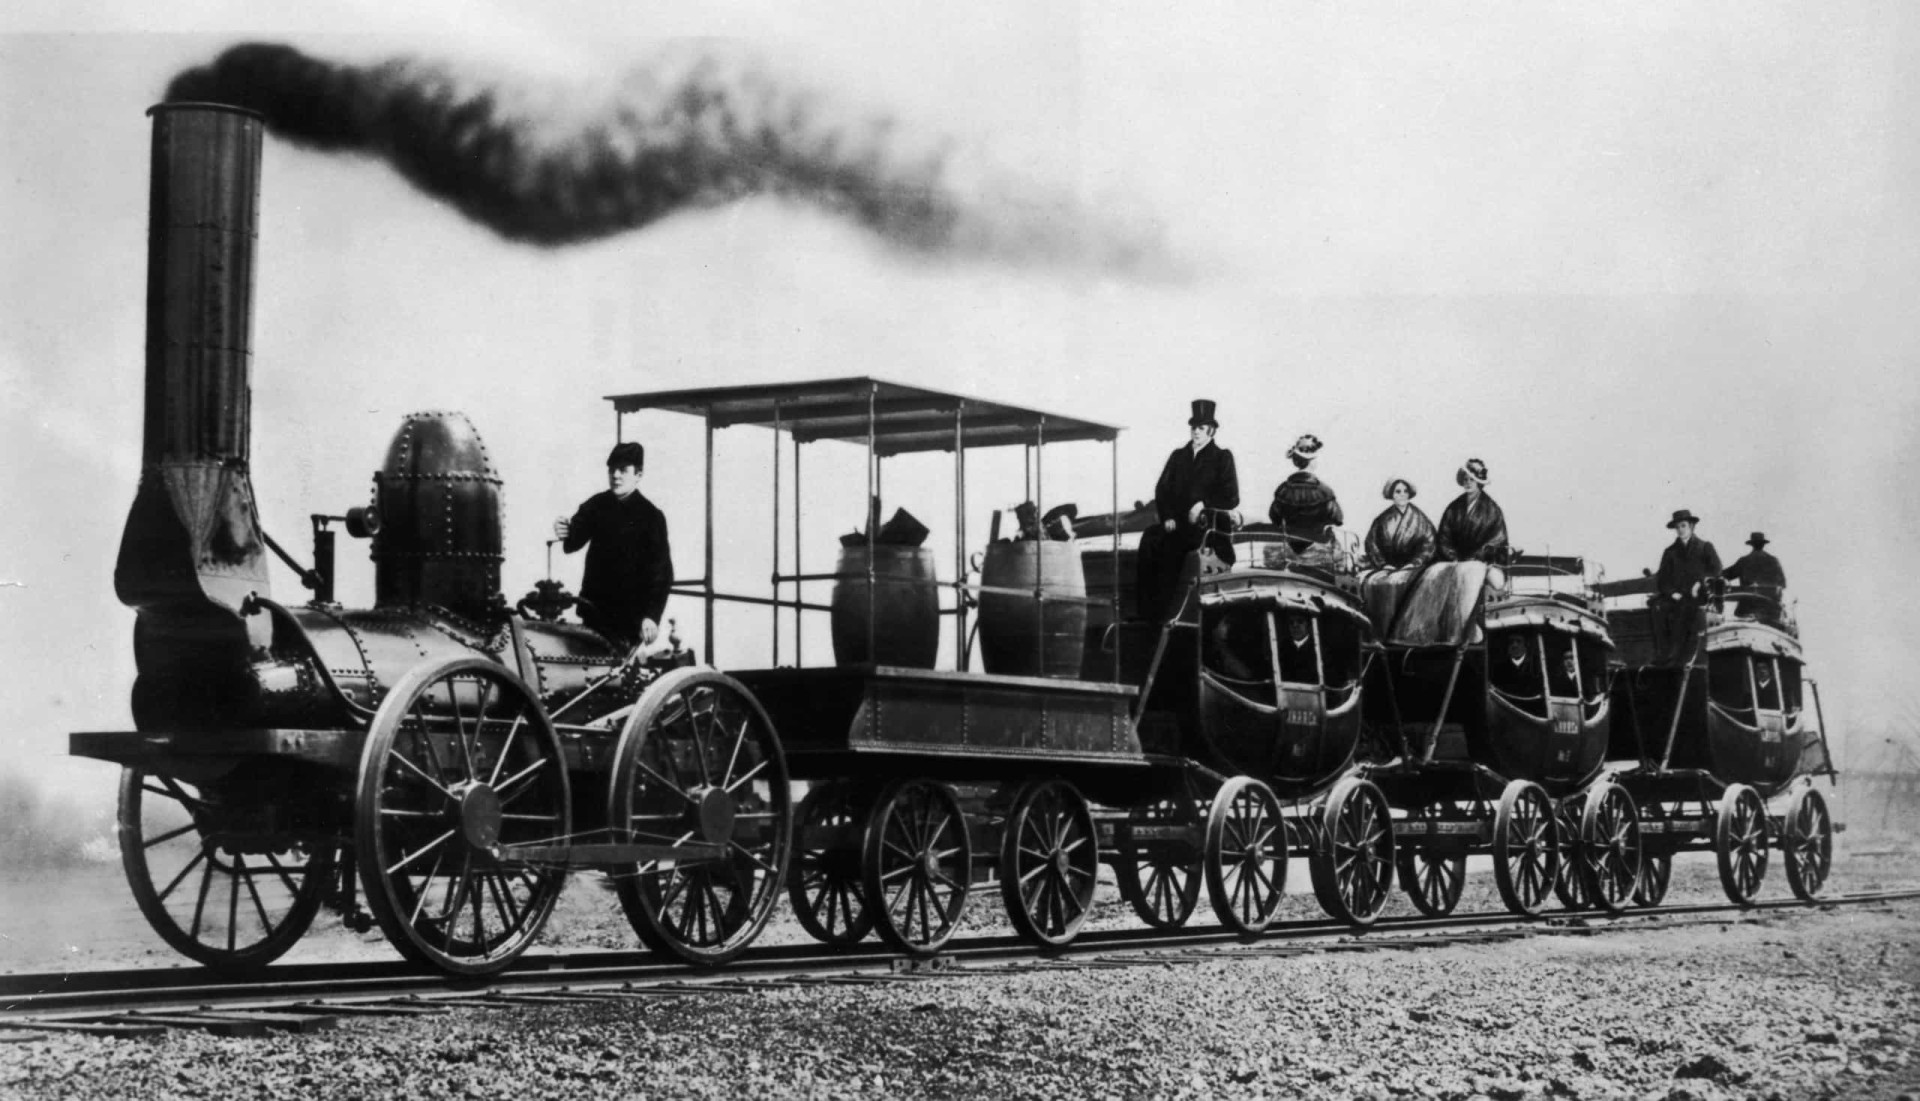 First railway. Паровоз 19 века. Паровоз 19 века в Лондоне. Первый паровоз в Англии. Паровозы Англии 19 века.